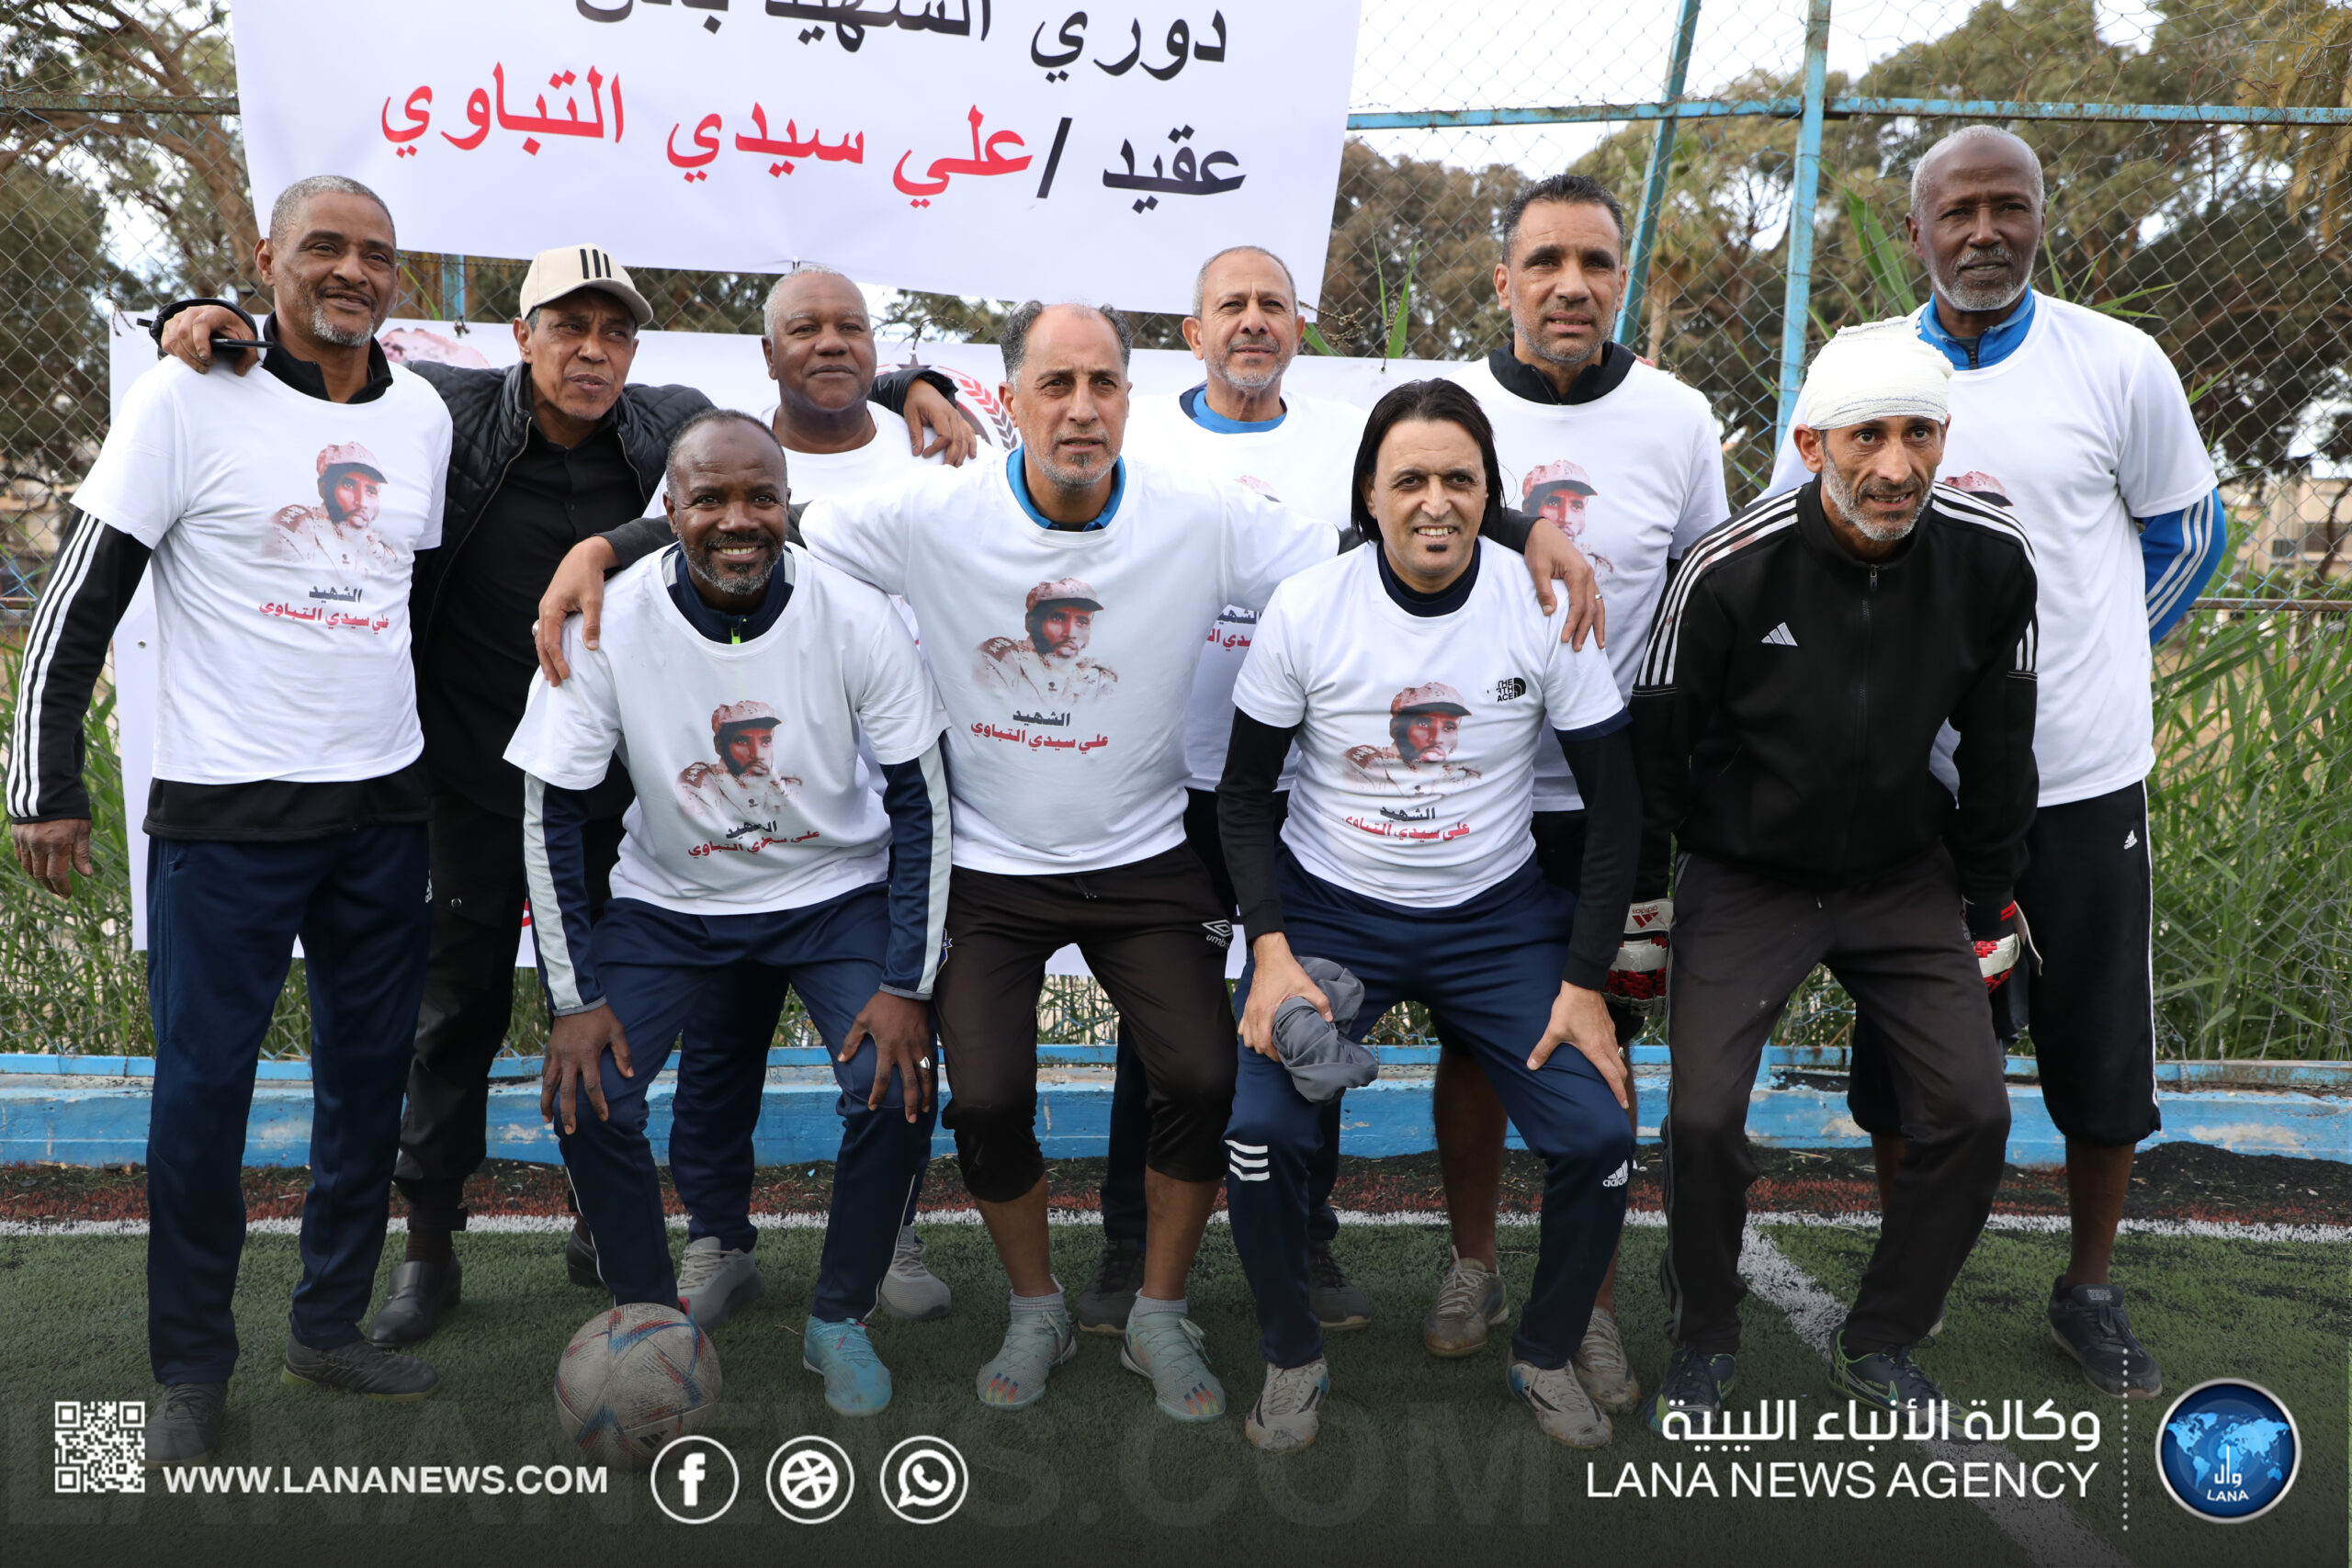 مباراة استعراضية لقدامى الرياضيين ببنغازي على هامش بطولة الشهيد العقيد علي التباوي